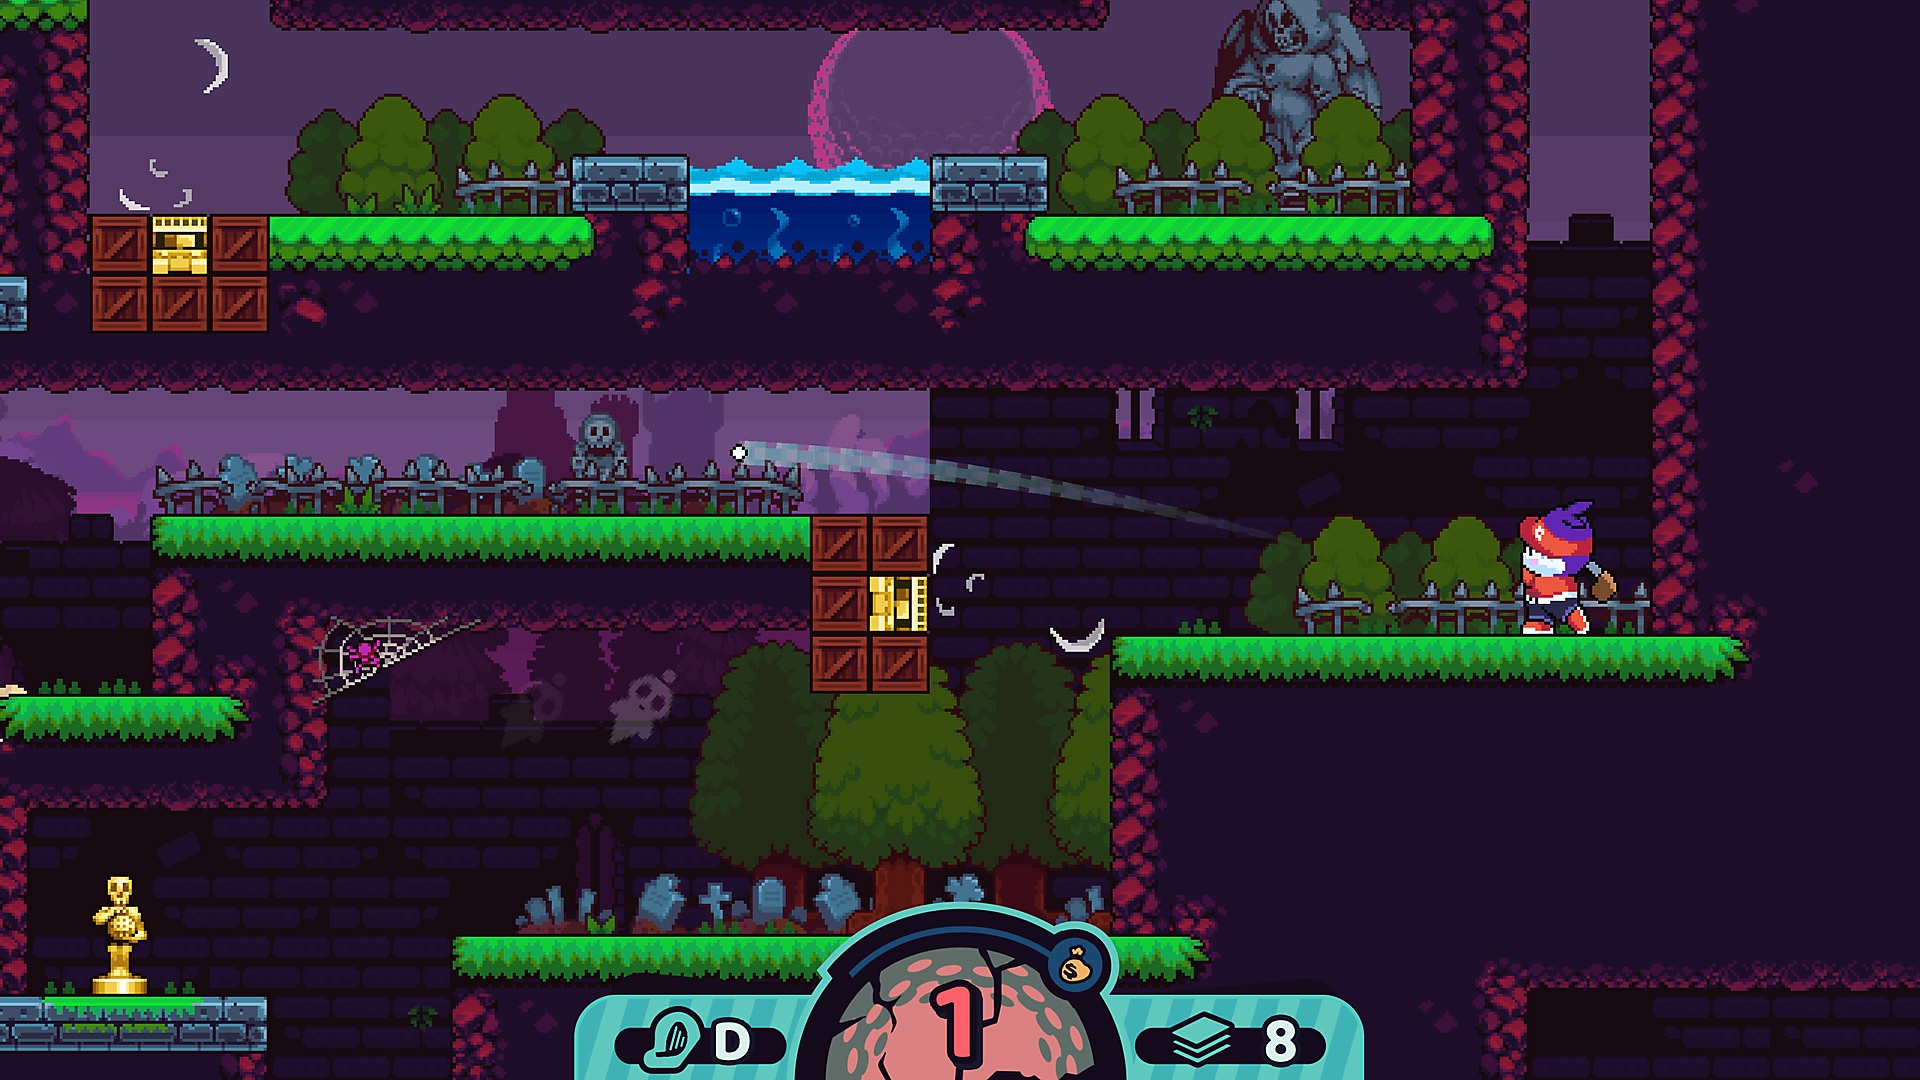 Snímek ze hry Cursed to Golf zobrazující sošku bůžka v levém dolním rohu hrací plochy